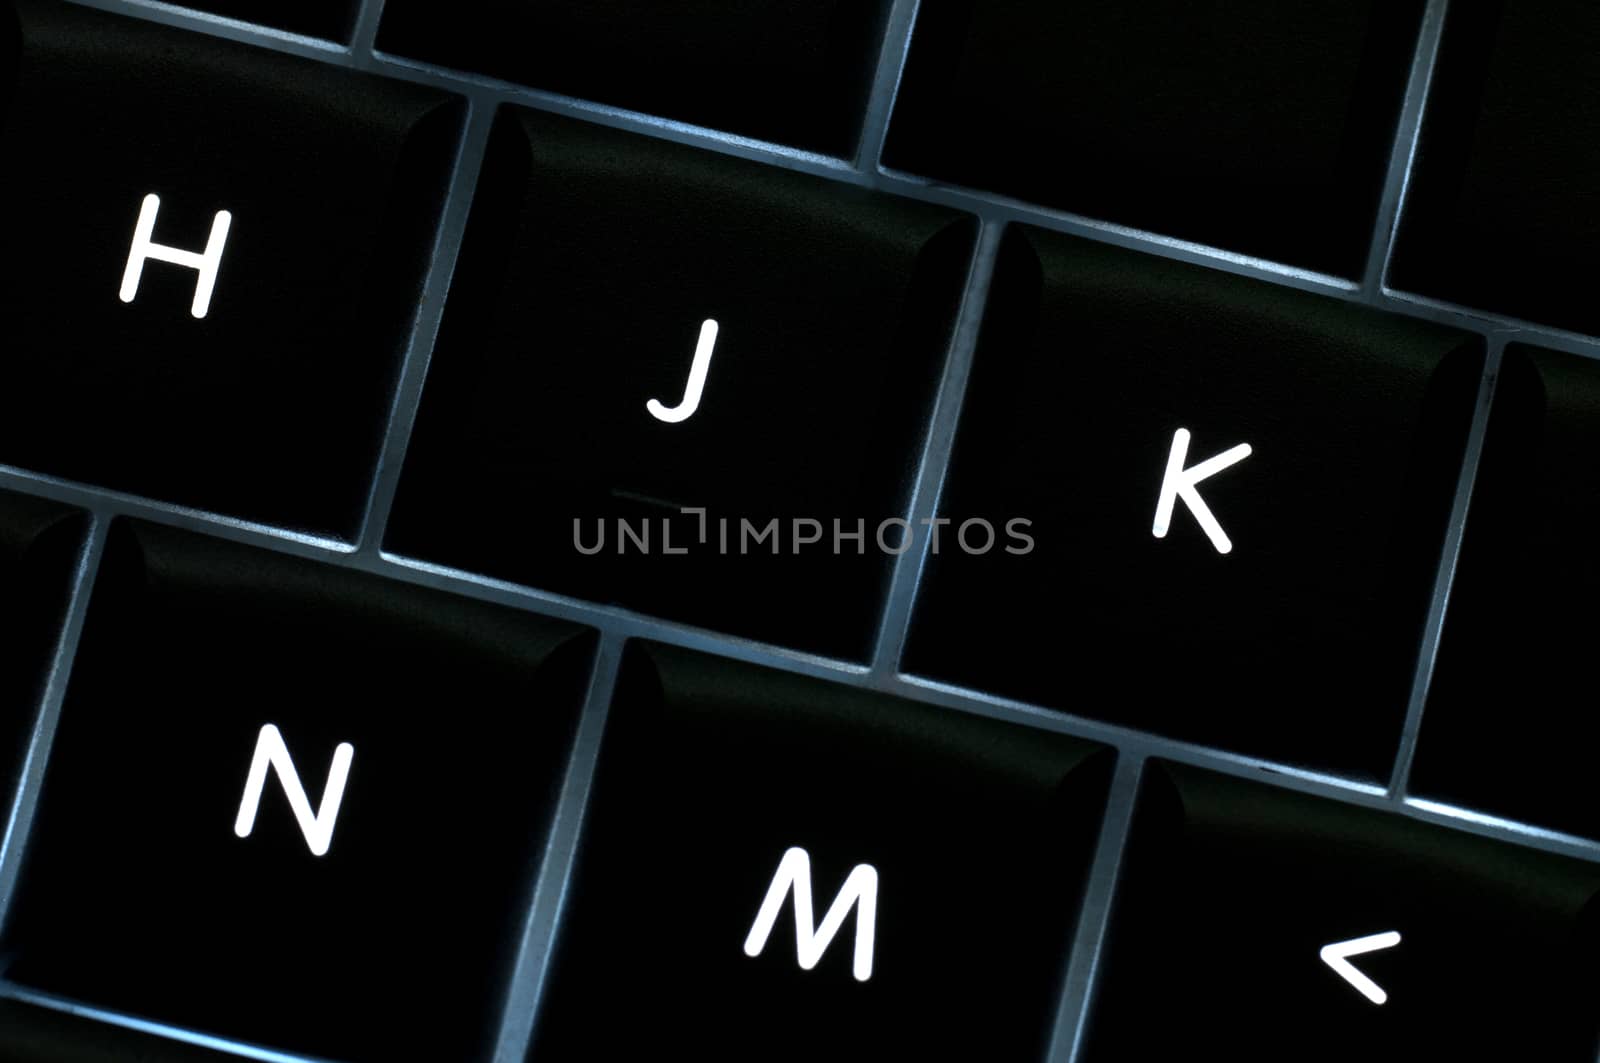 H J K N M keys backlit on a keyboard